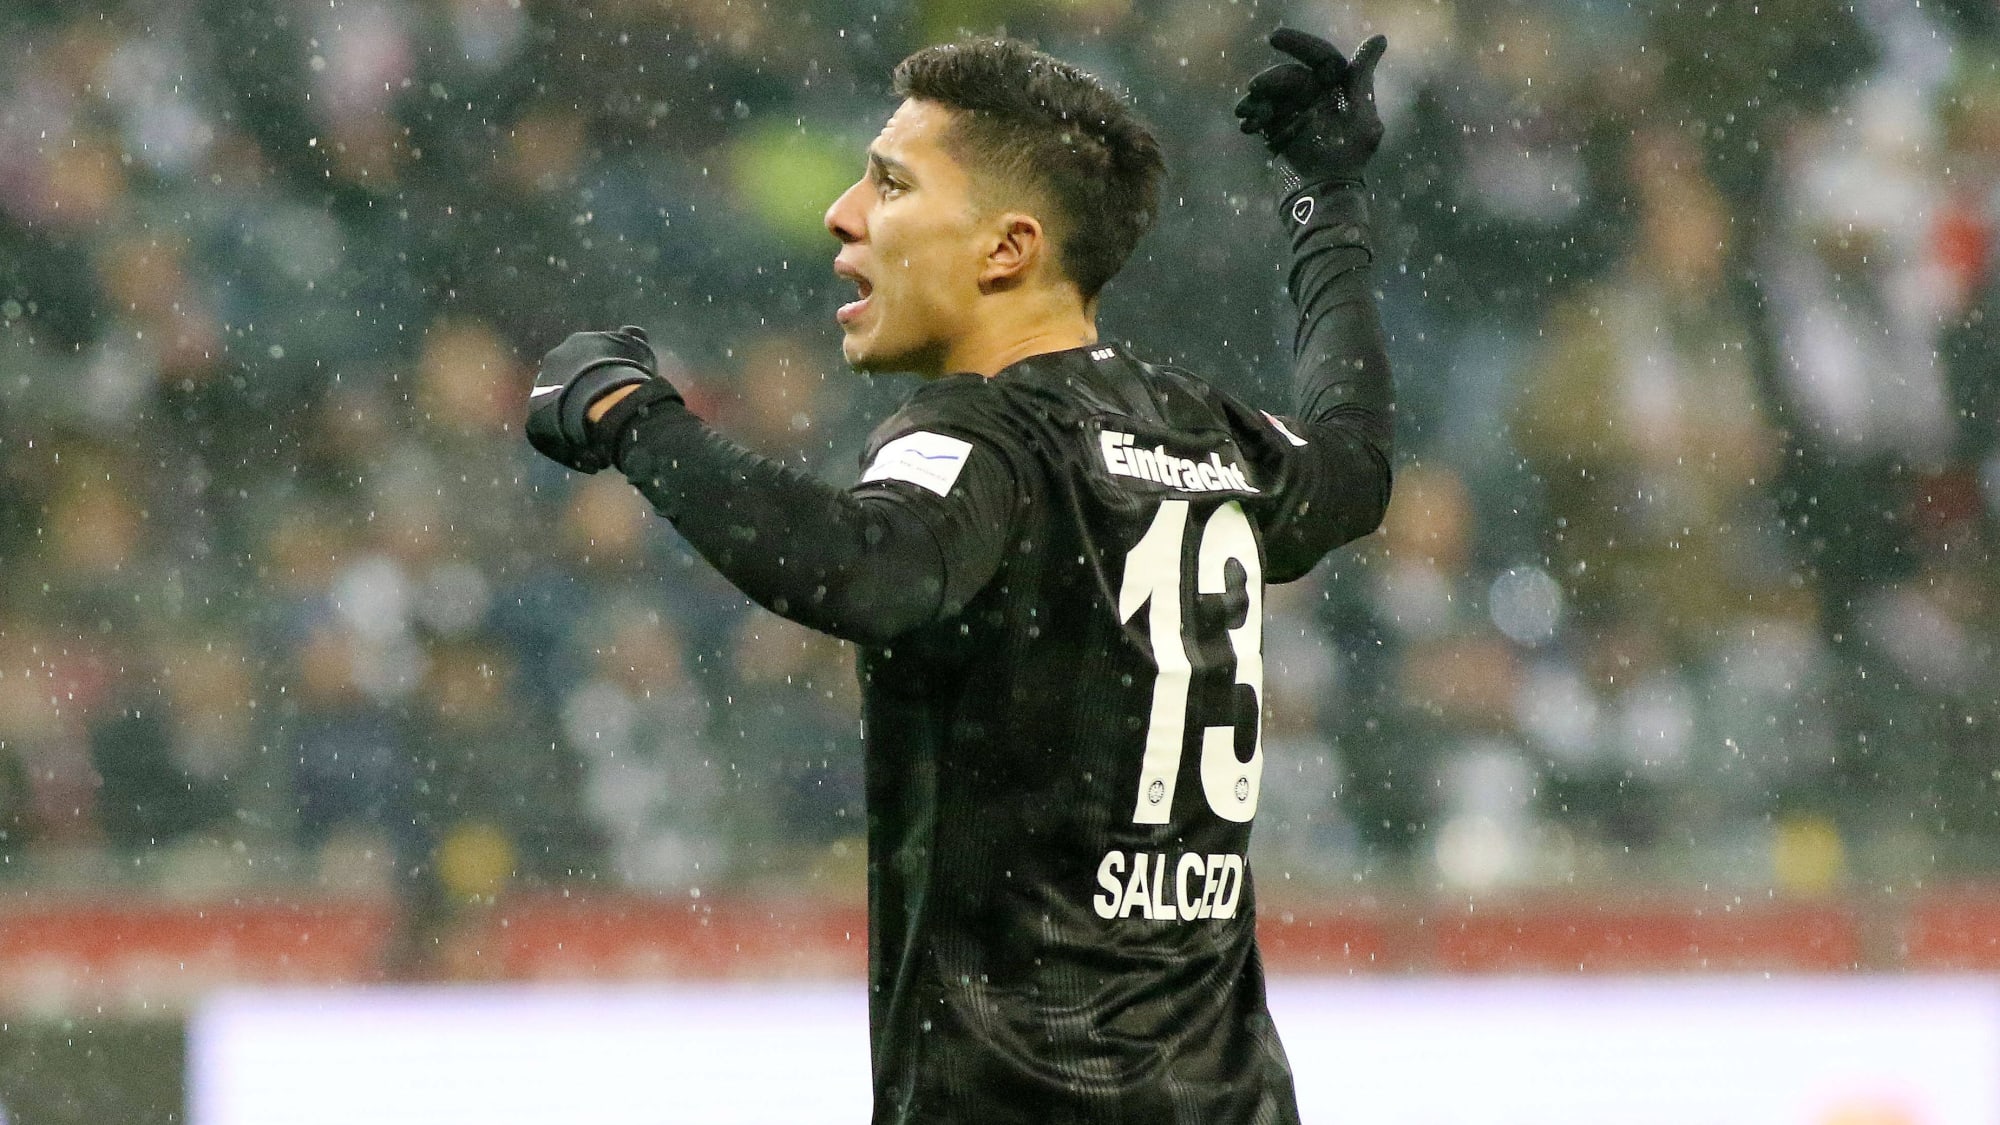 Carlos Salcedo gestikuliert im alten schwarzen Dress von Eintracht Frankfurt im Regen stehend.&nbsp;